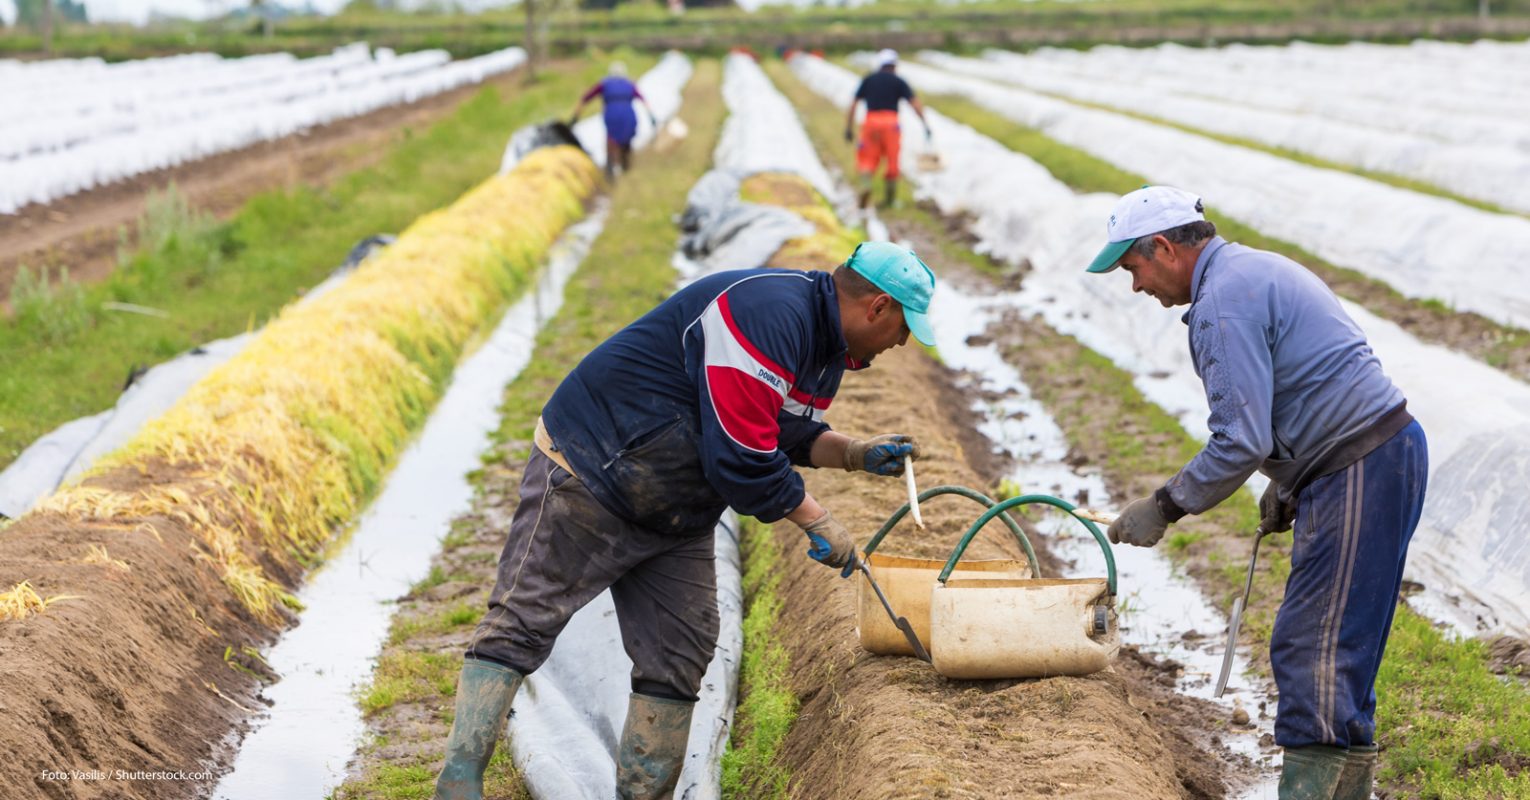 BMEL: Kurzfristige Beschäftigung und der Wert der Landwirtschaft